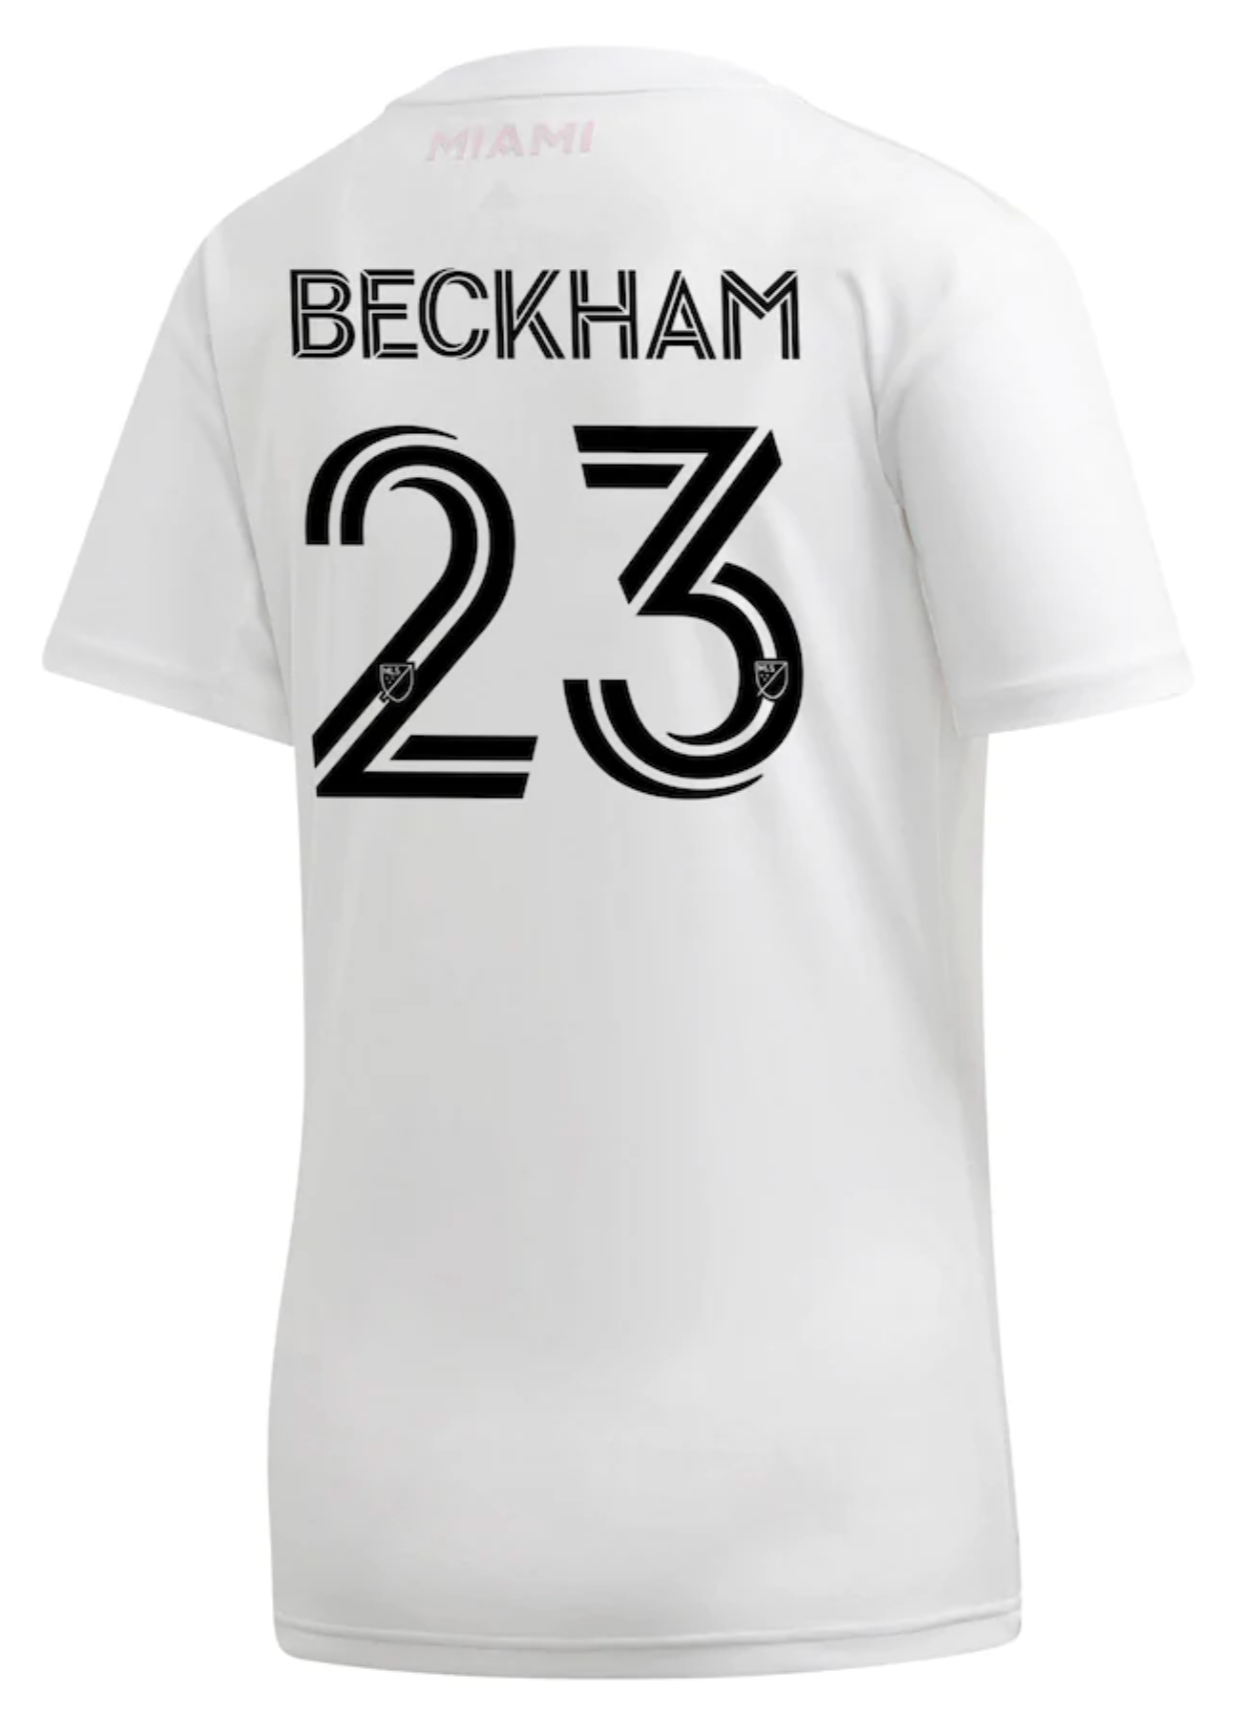 david beckham soccer jersey